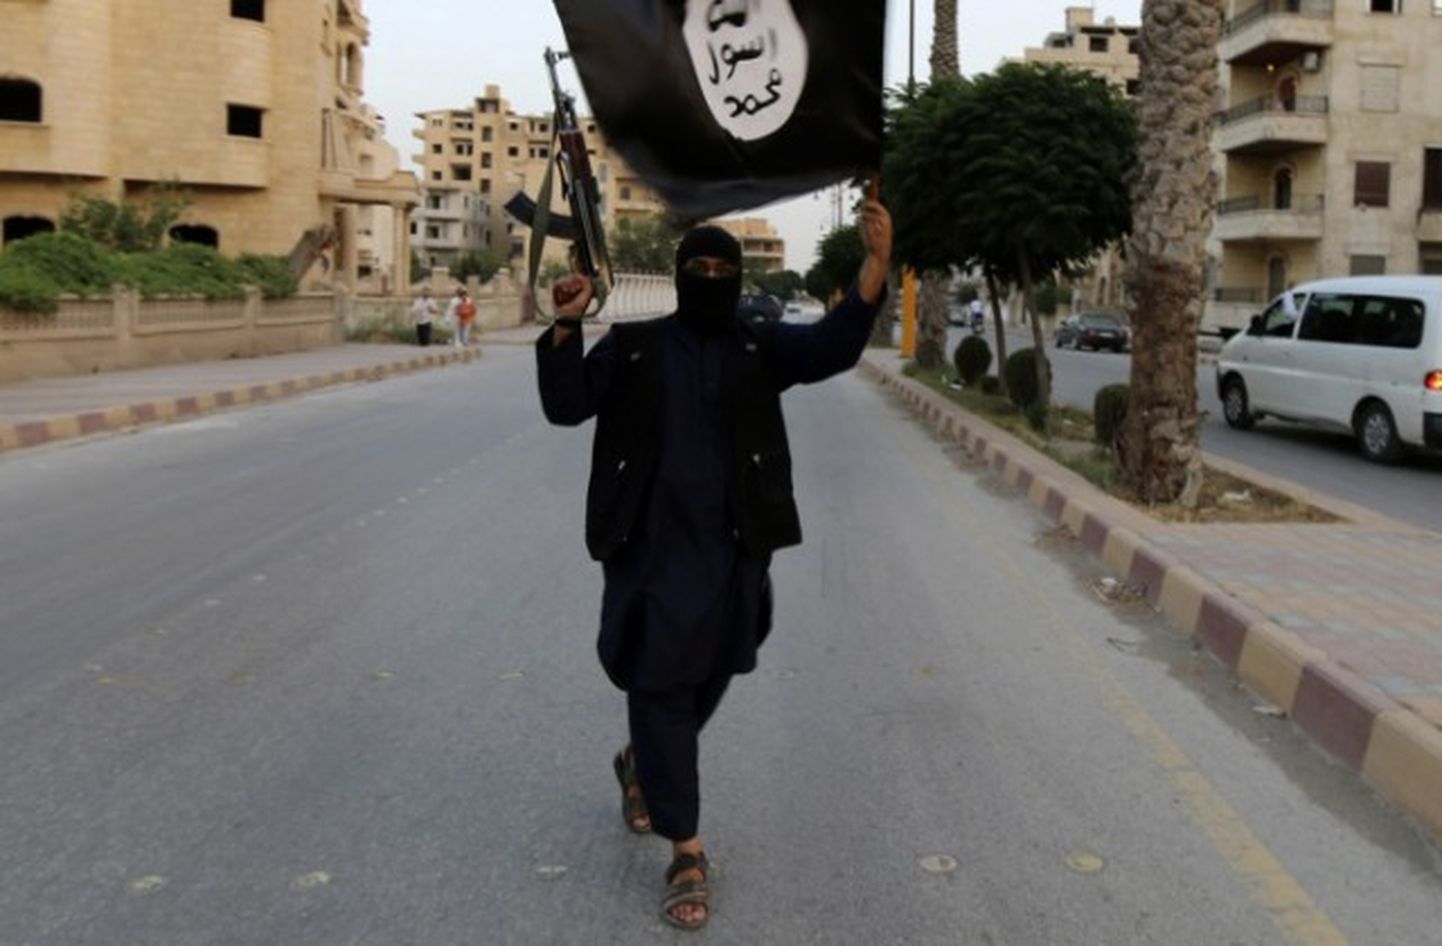 ISIS kaujinieks Irākas ielās. Ilustratīvs attēls